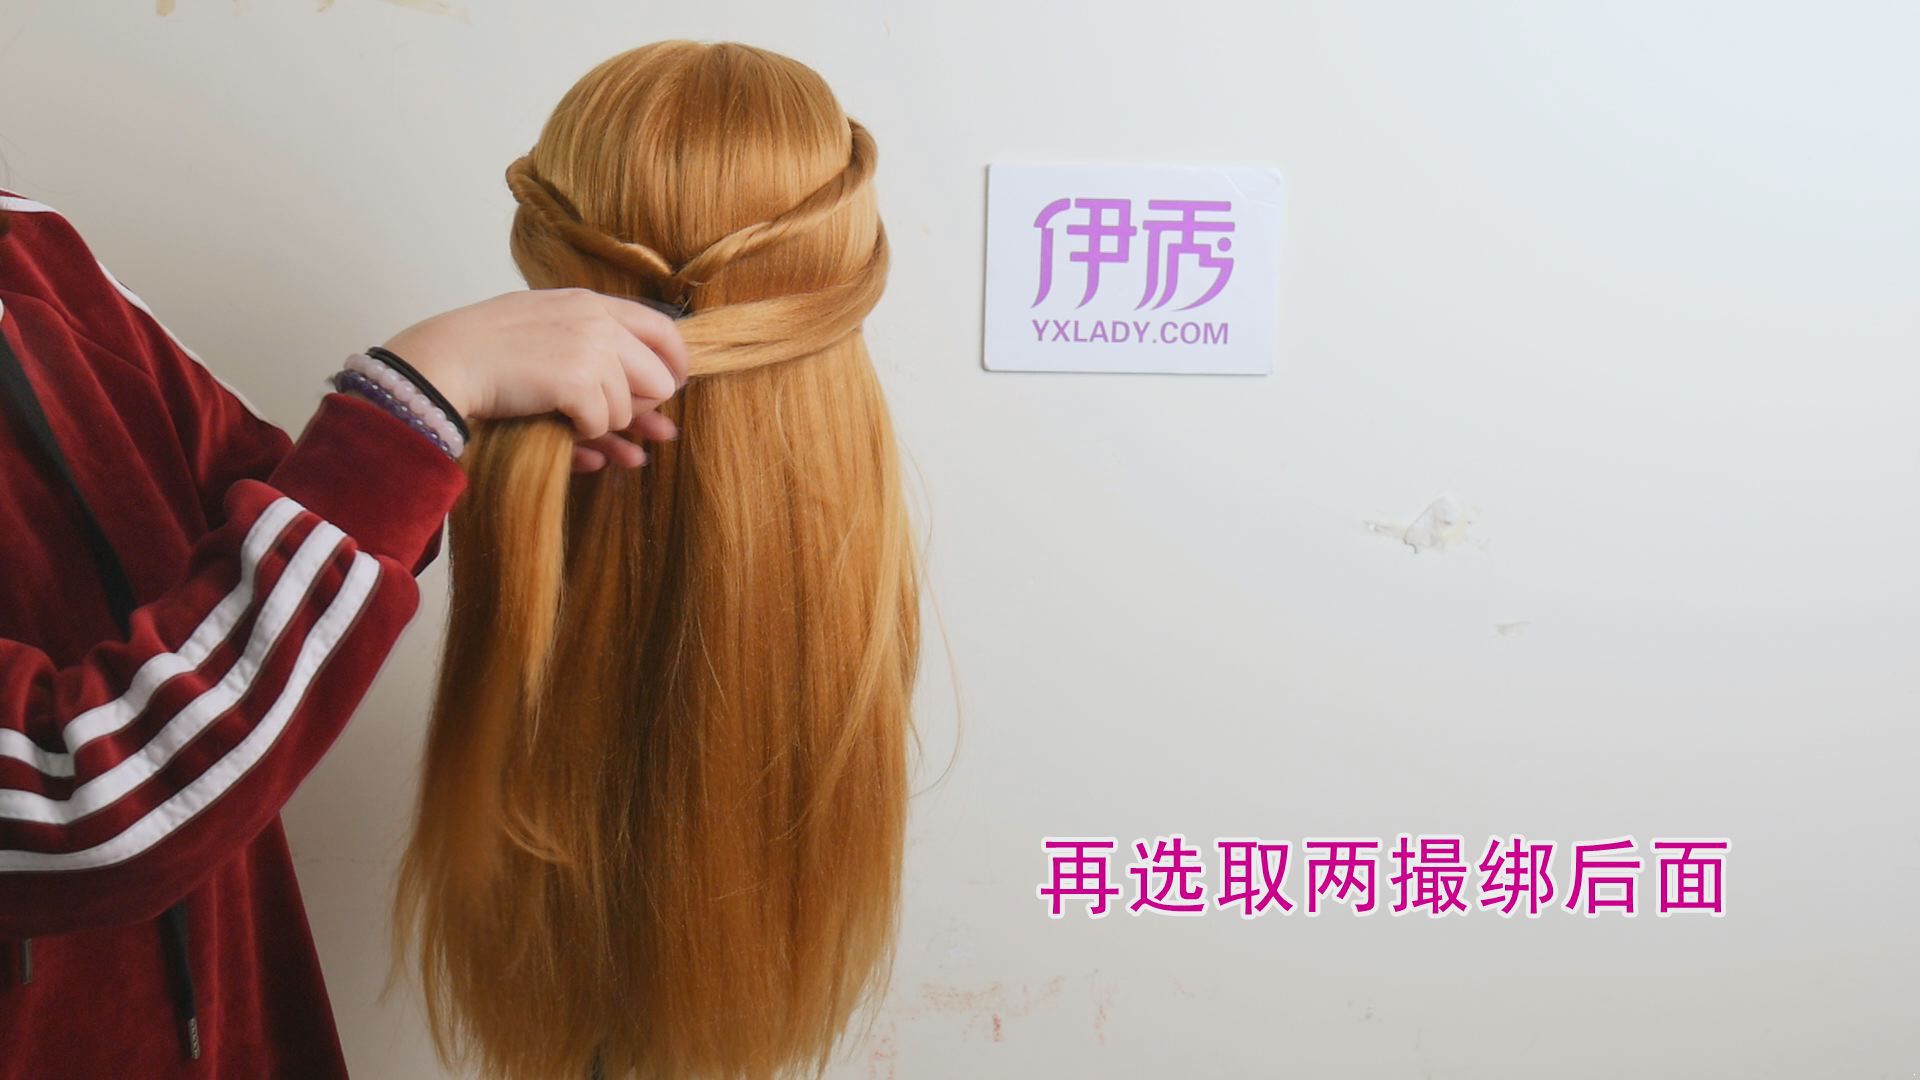 韩式发型图片 这样既简单又好看 小白也可以学_伊秀视频|yxlady.com